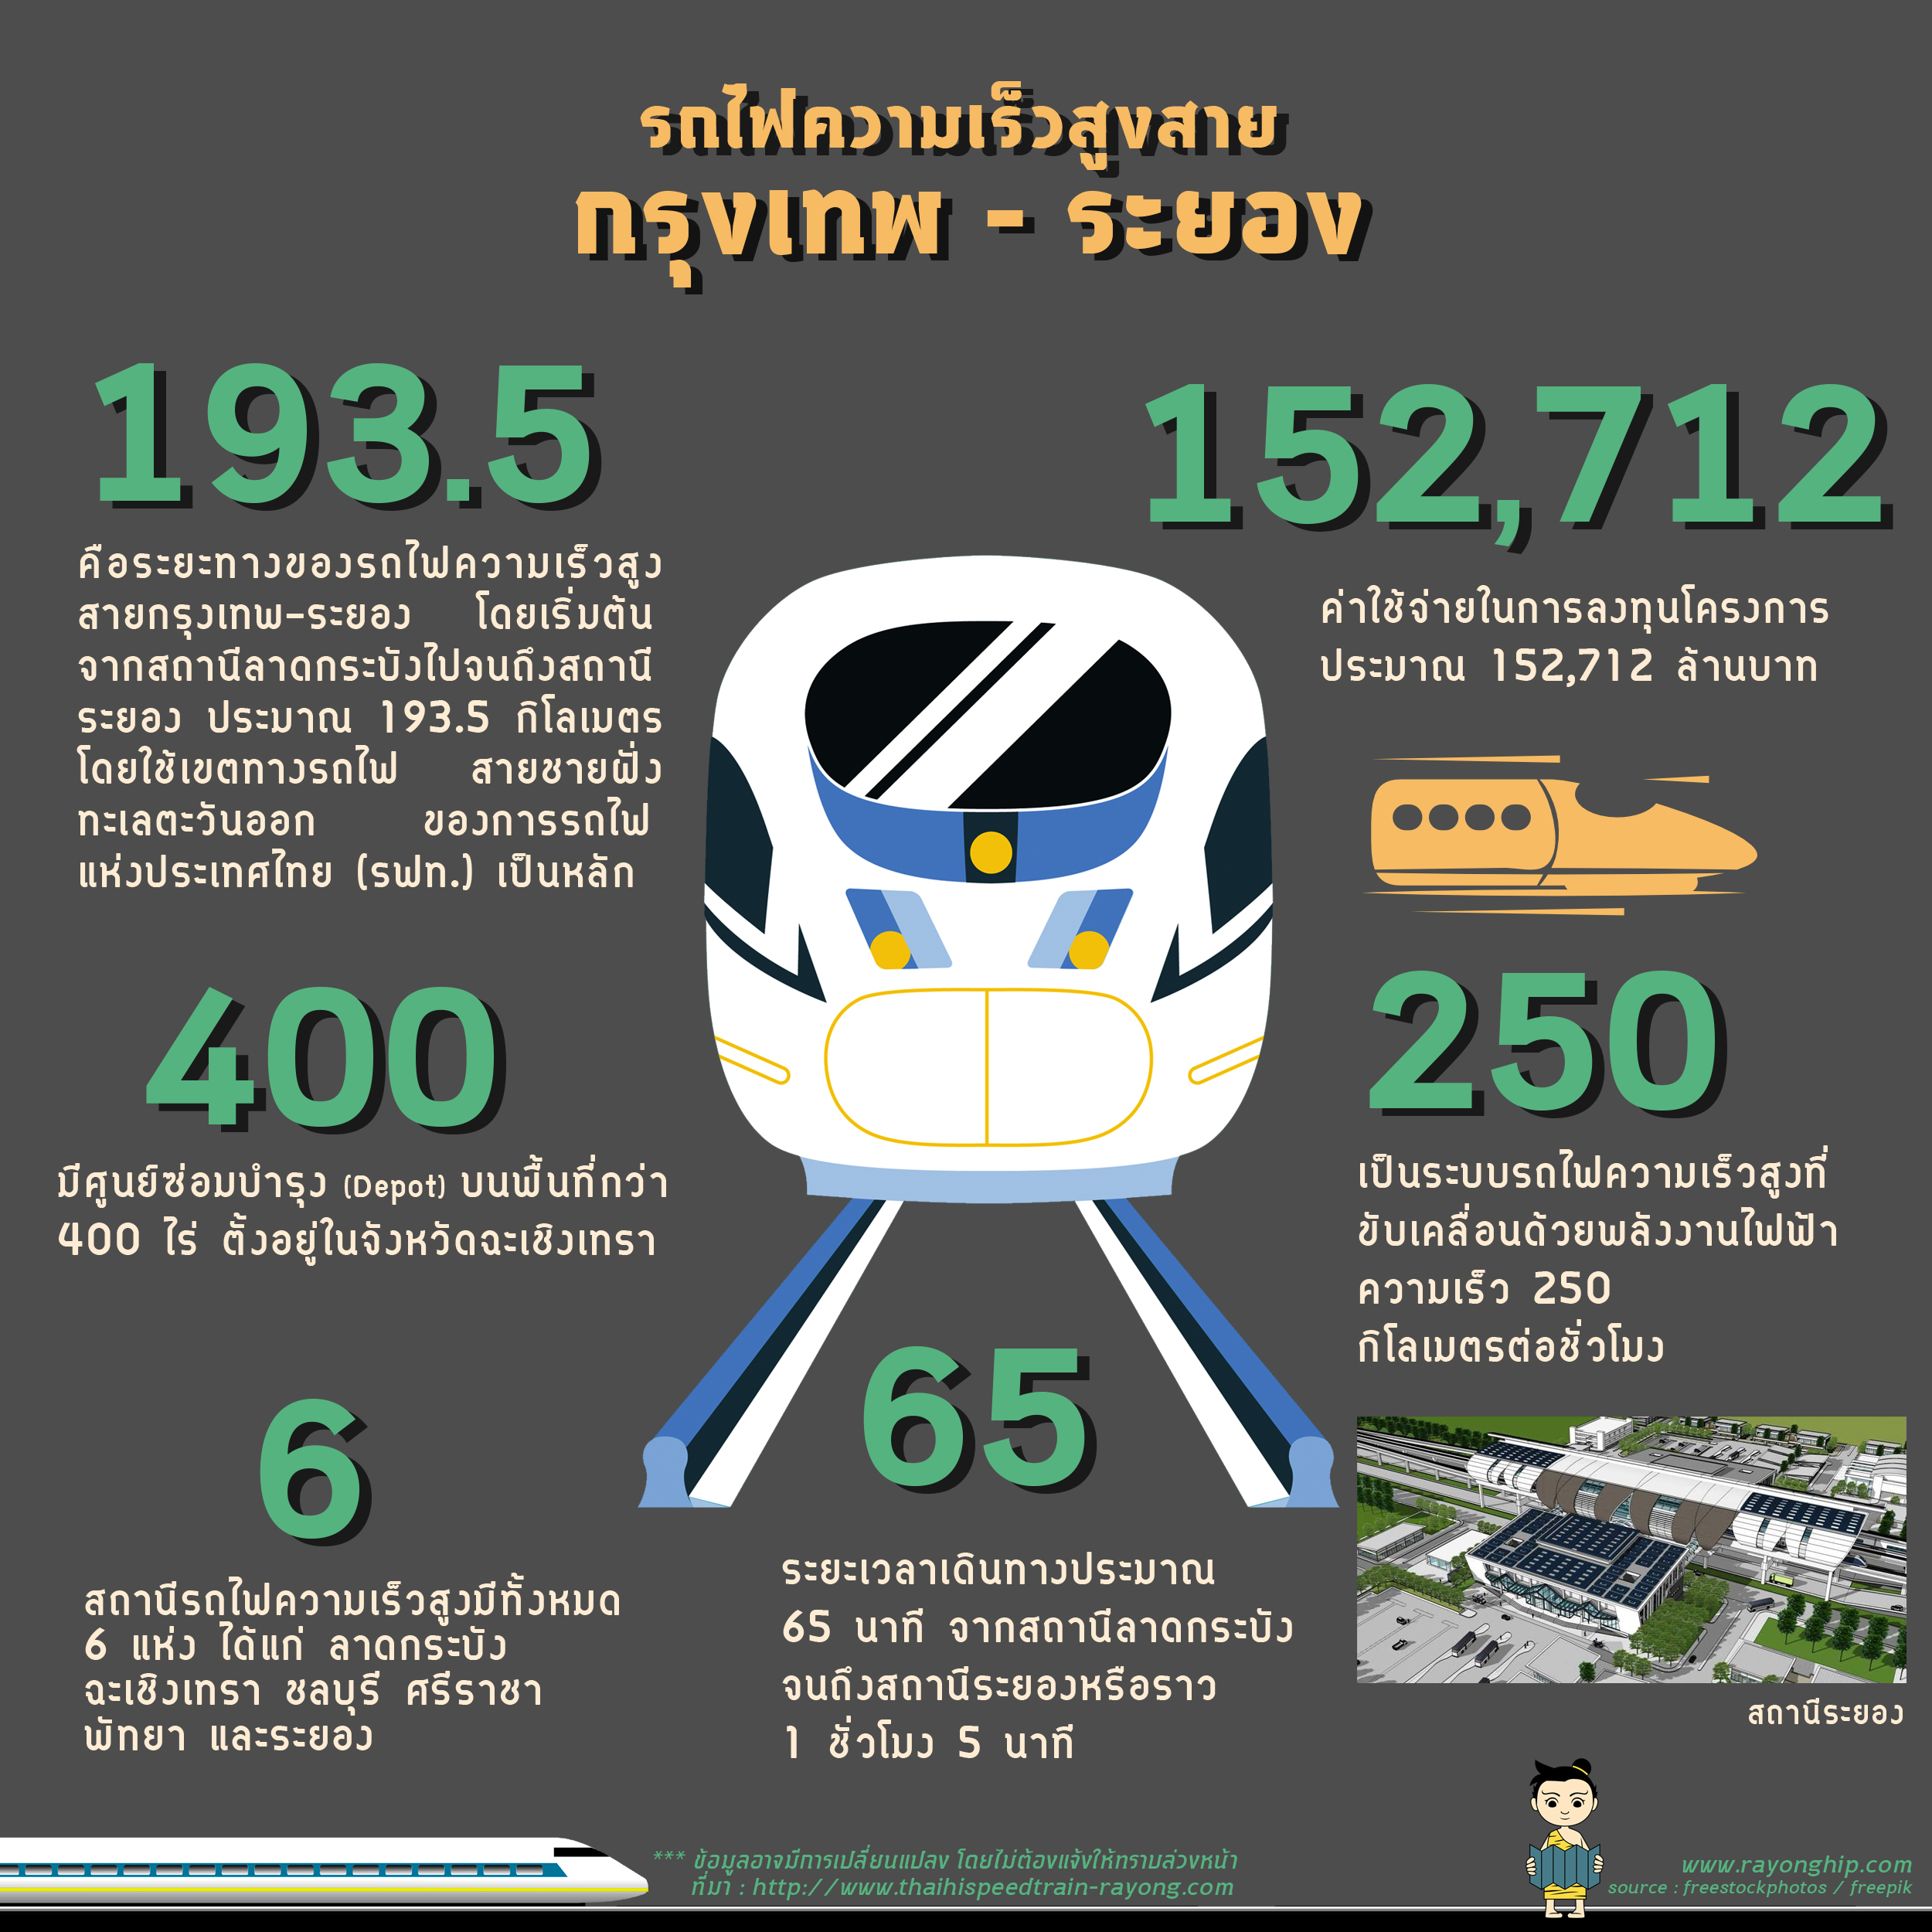 high-speed-train-Bangkok-Rayong